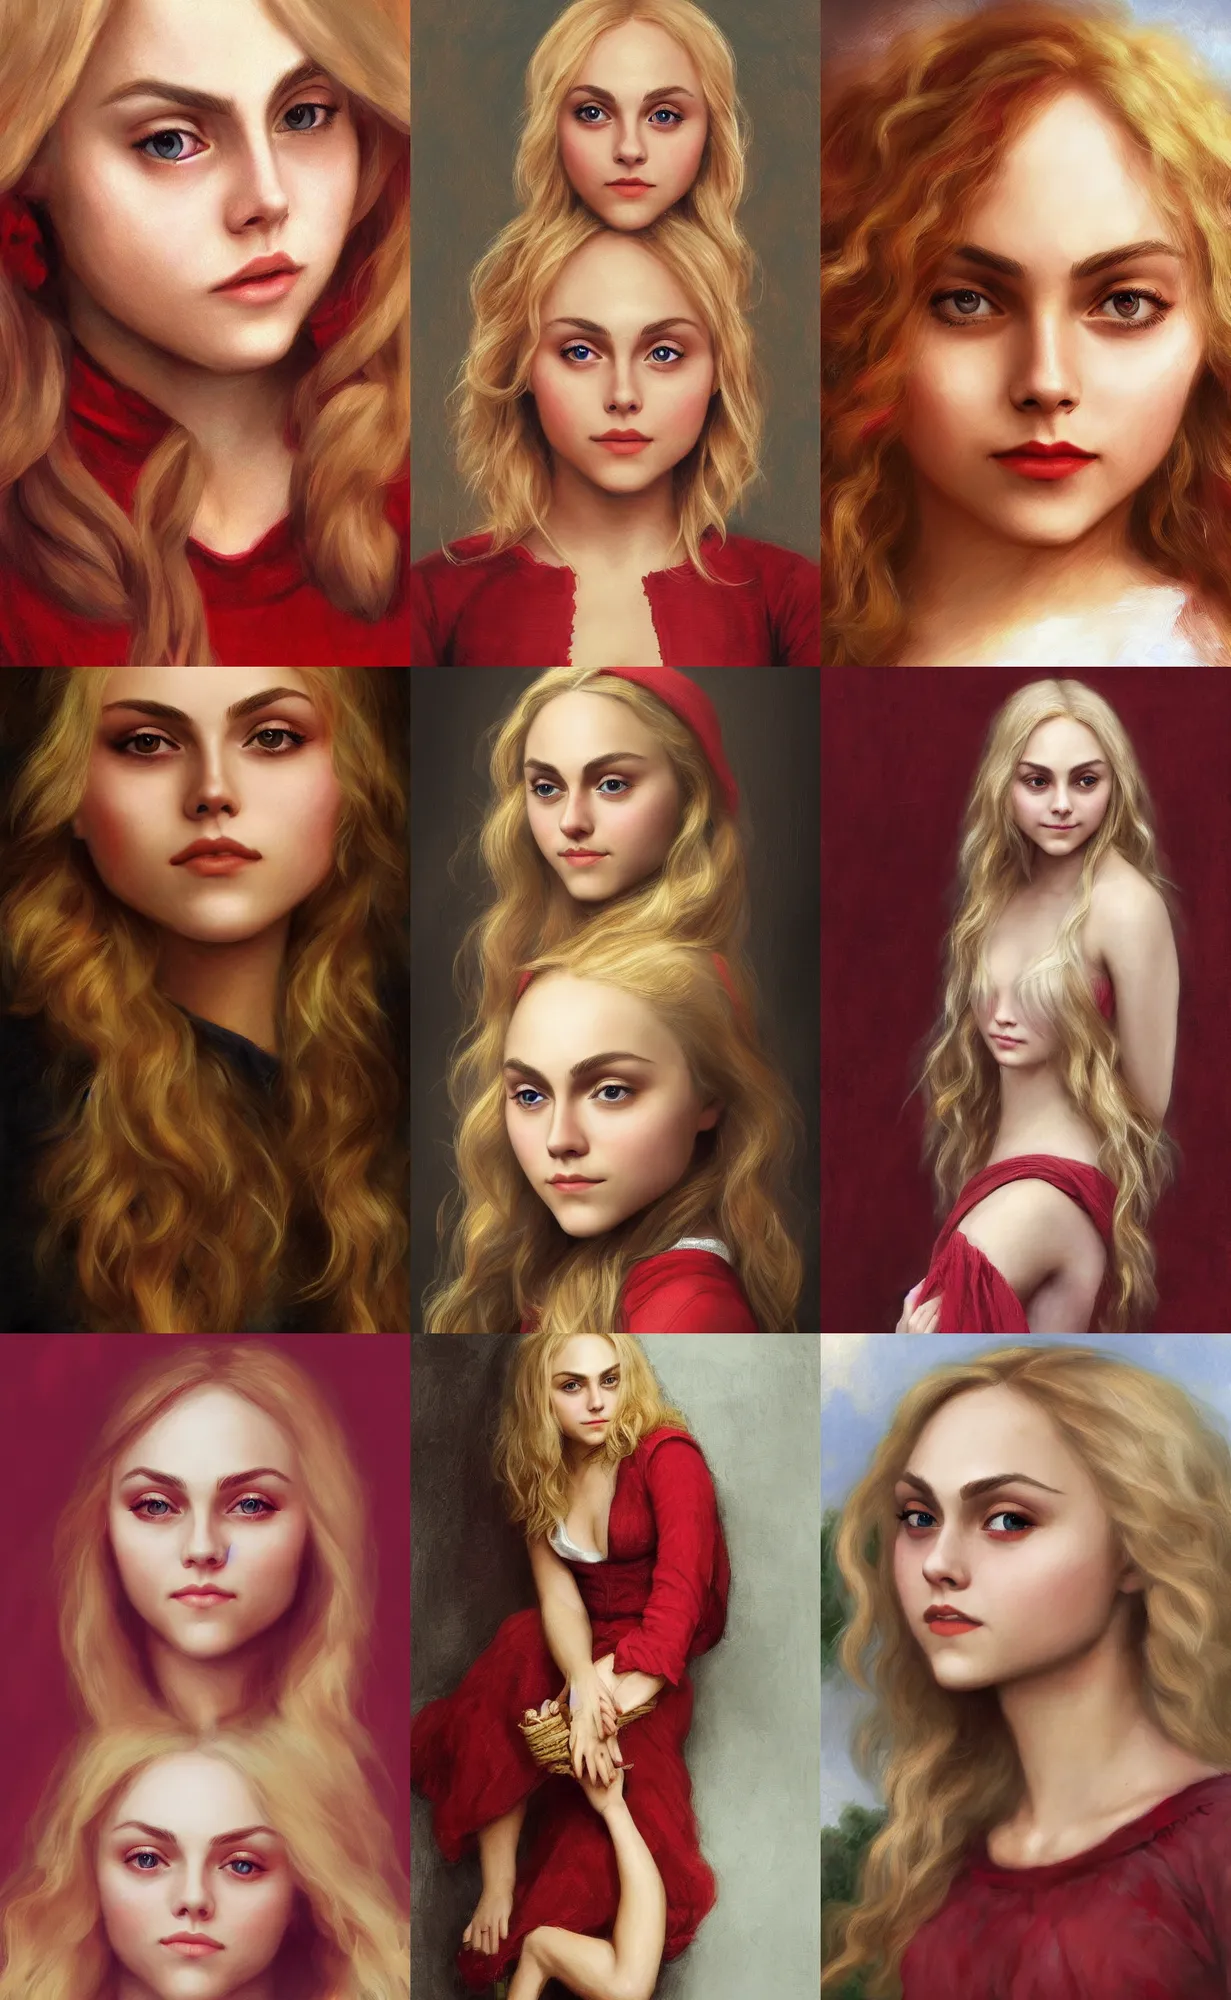 Prompt: portrait annasophia robb wearing red houpelande , long blond hair, hd artstation, bouguereau